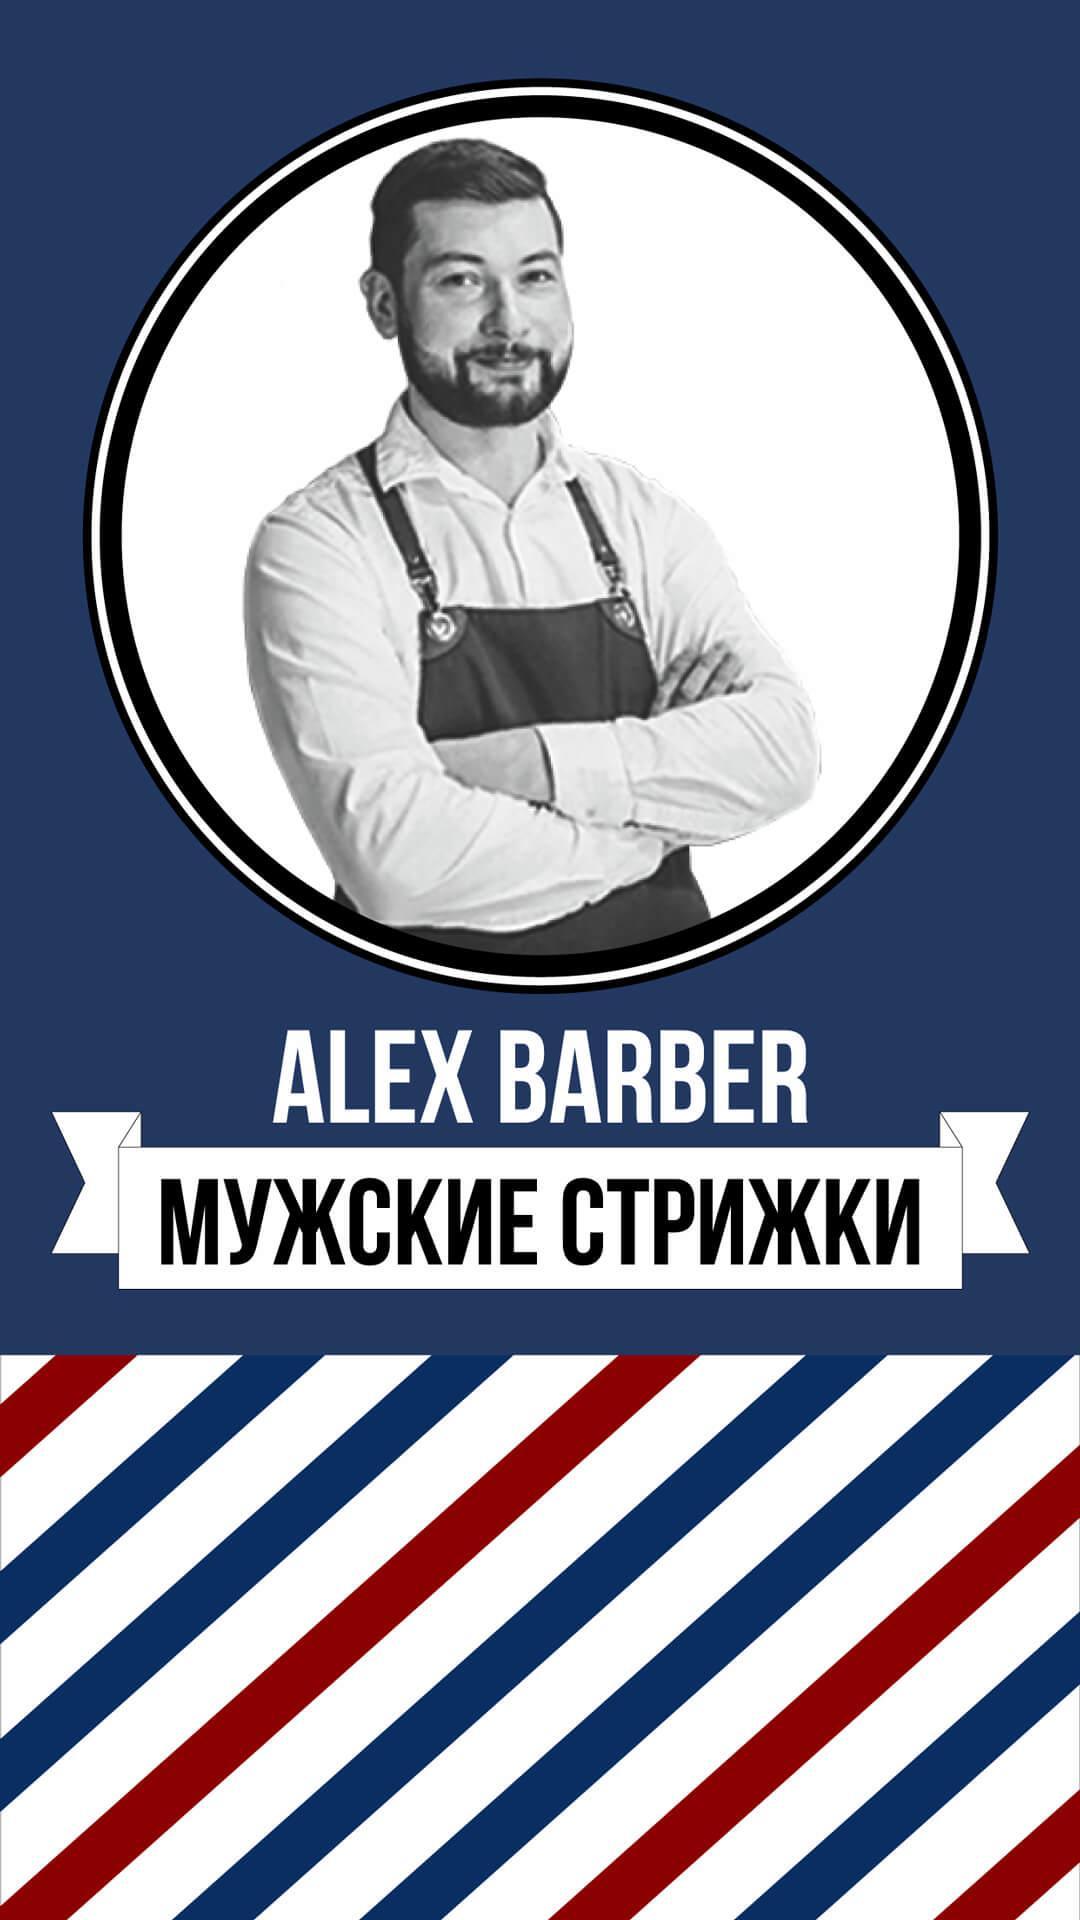 Barber 3. Барбер. Alex Barber. Мужская парикмахерская реклама. Барбер Алекс Краснодар.